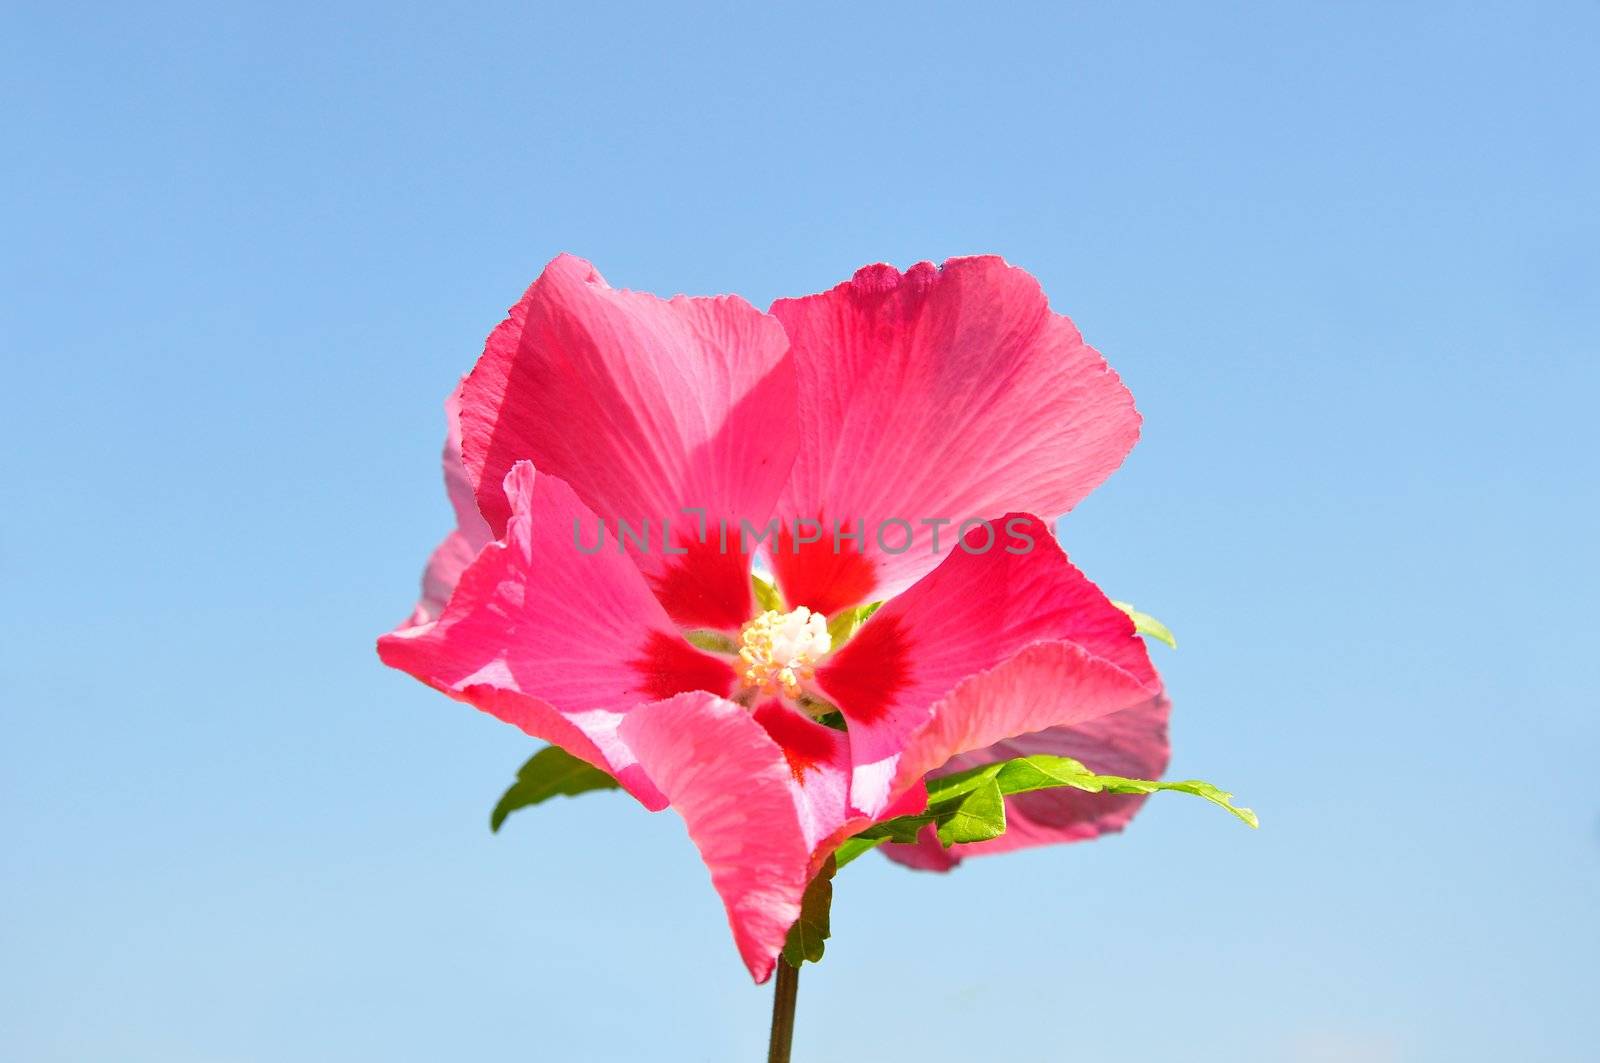 Hibiscus flower by rbiedermann